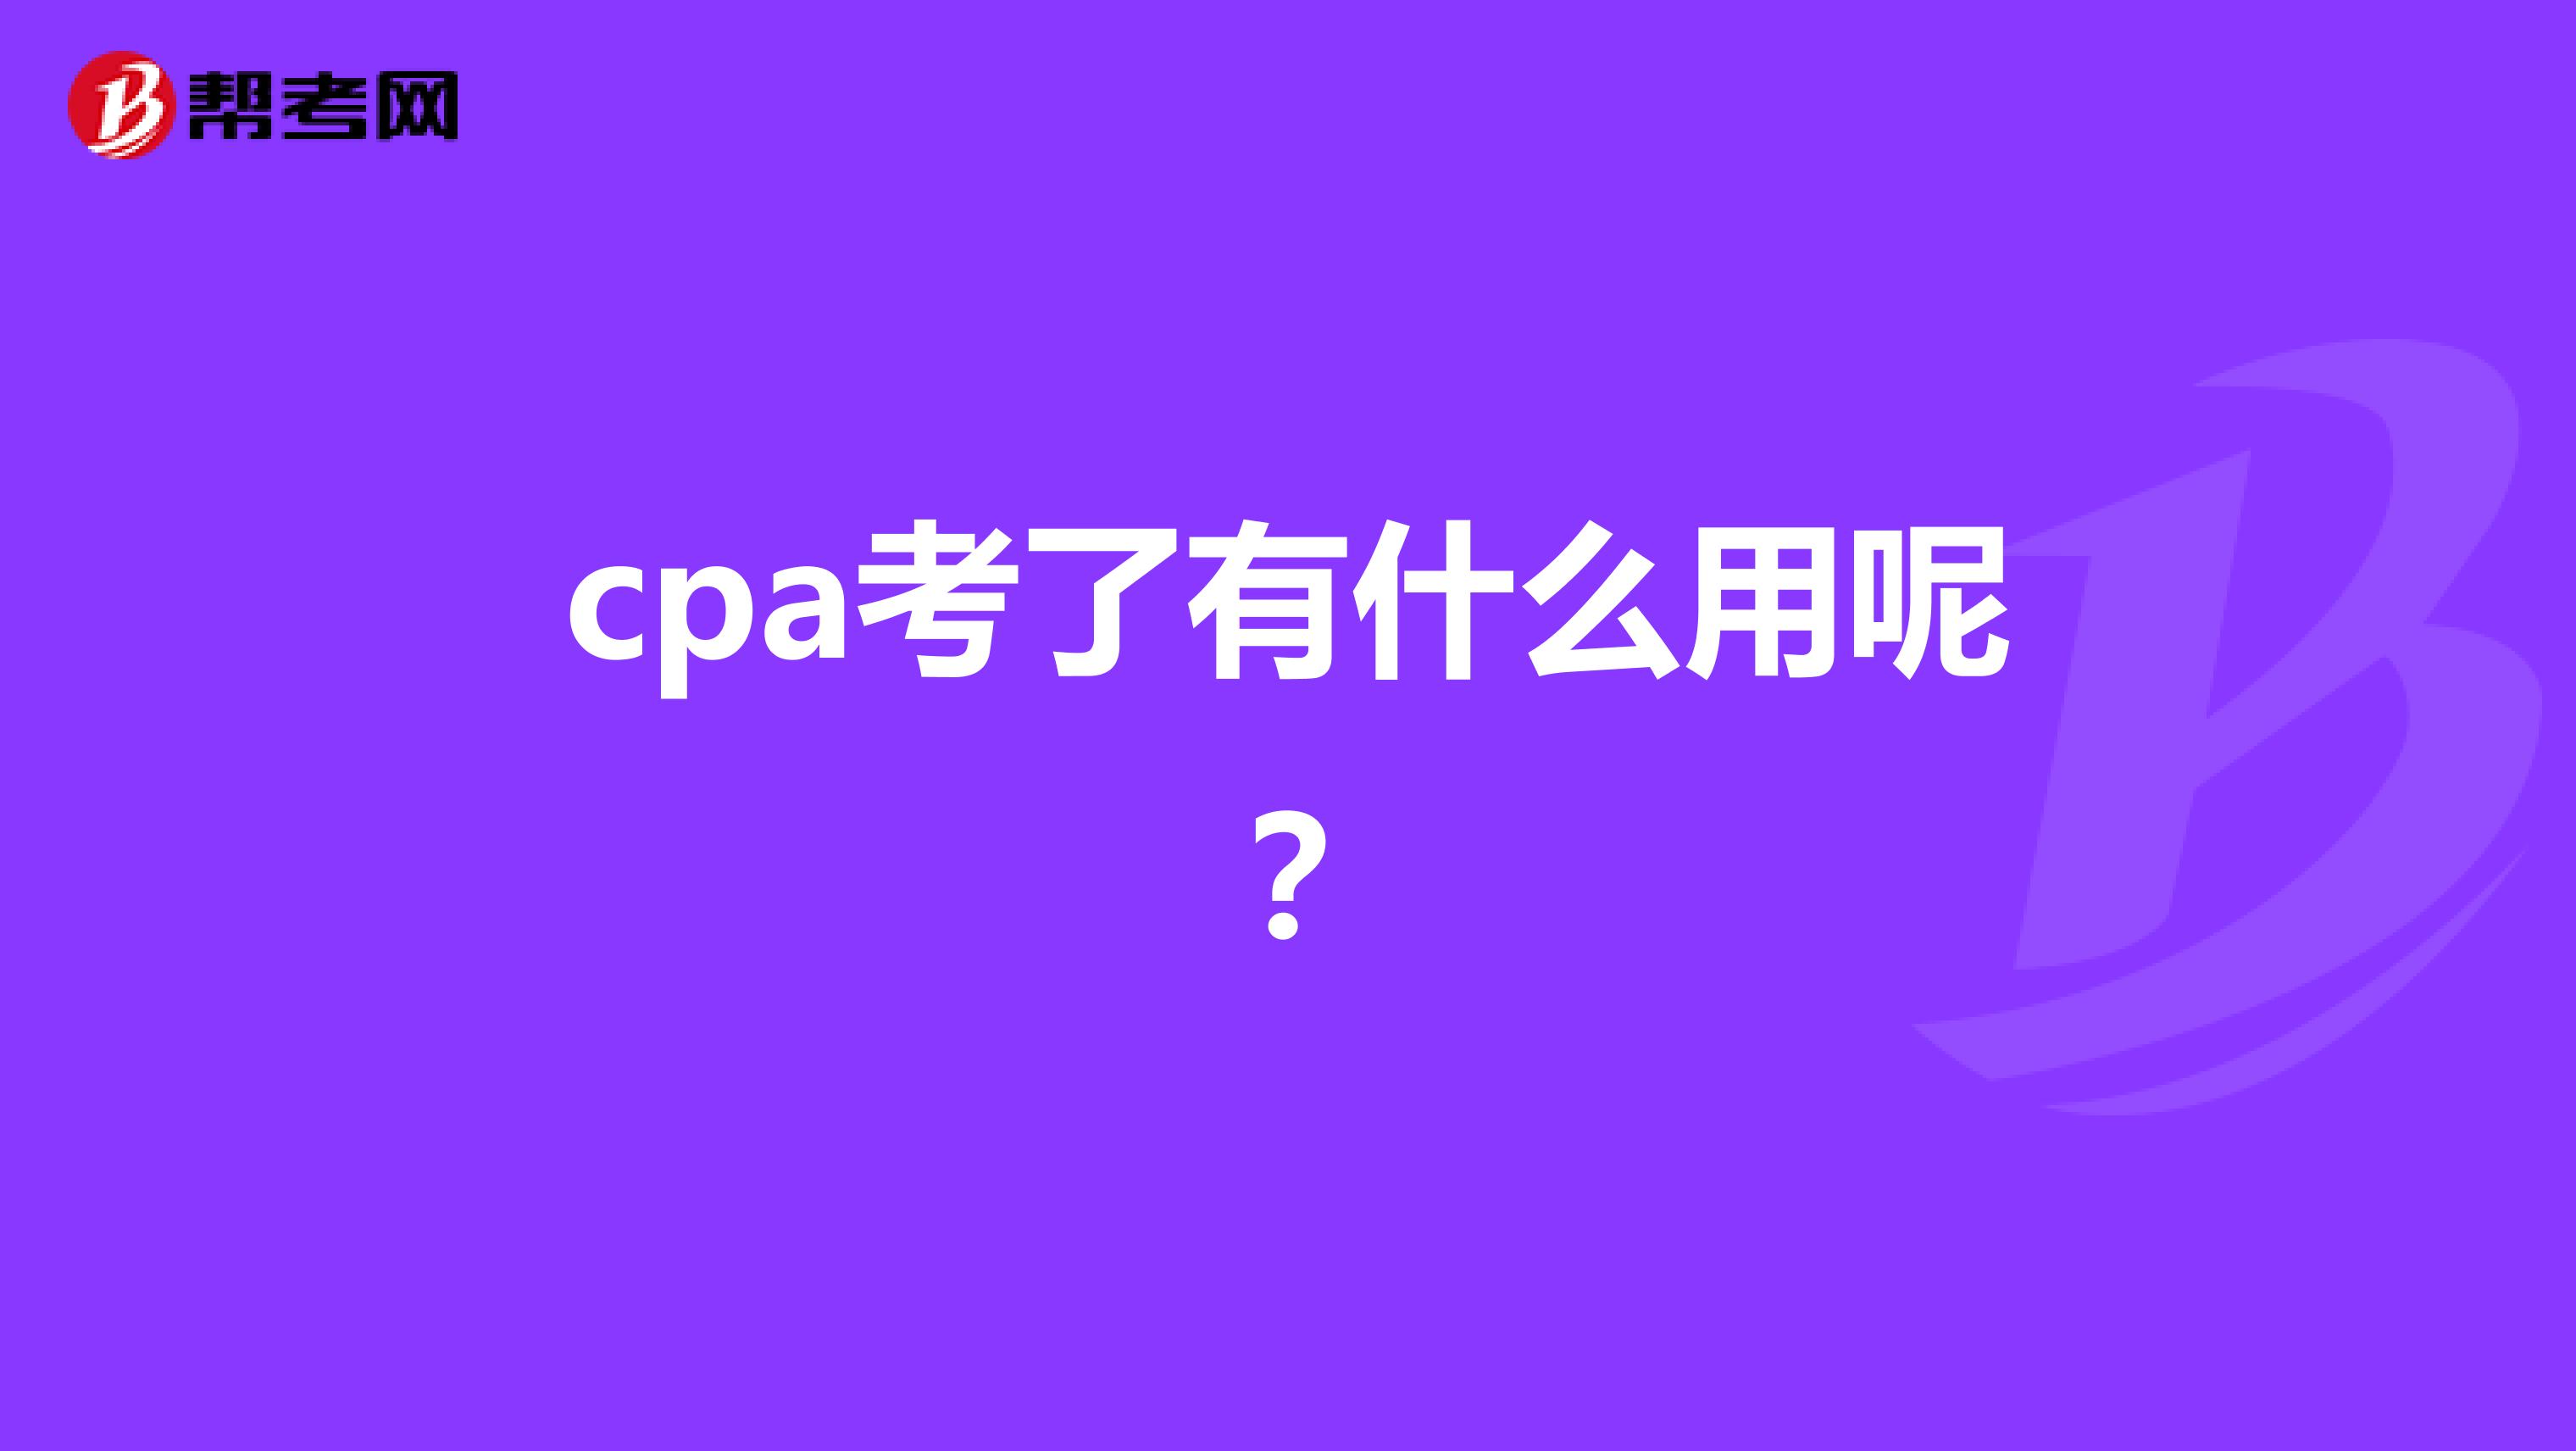 cpa考了有什么用呢？